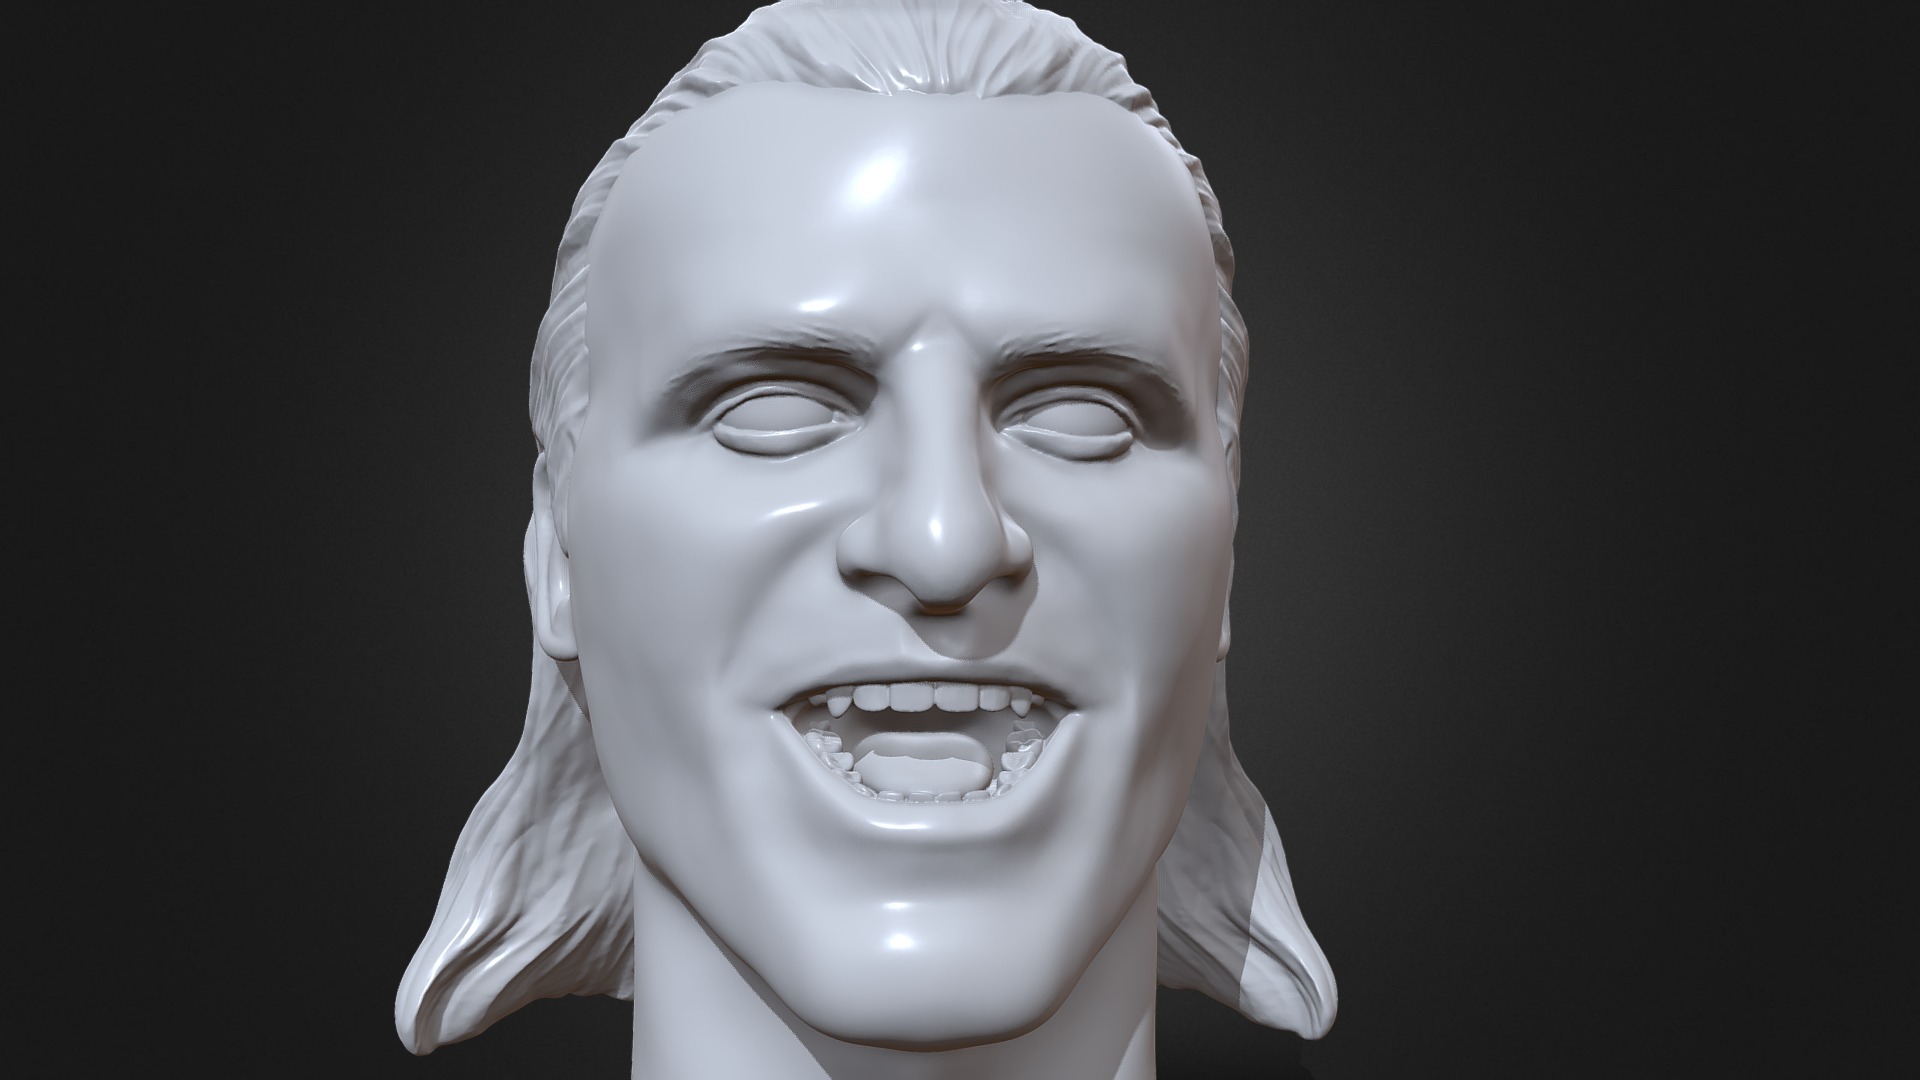 3D model Owen Hart 3D printable portrait sculpture - This is a 3D model of the Owen Hart 3D printable portrait sculpture. The 3D model is about a statue of a person.